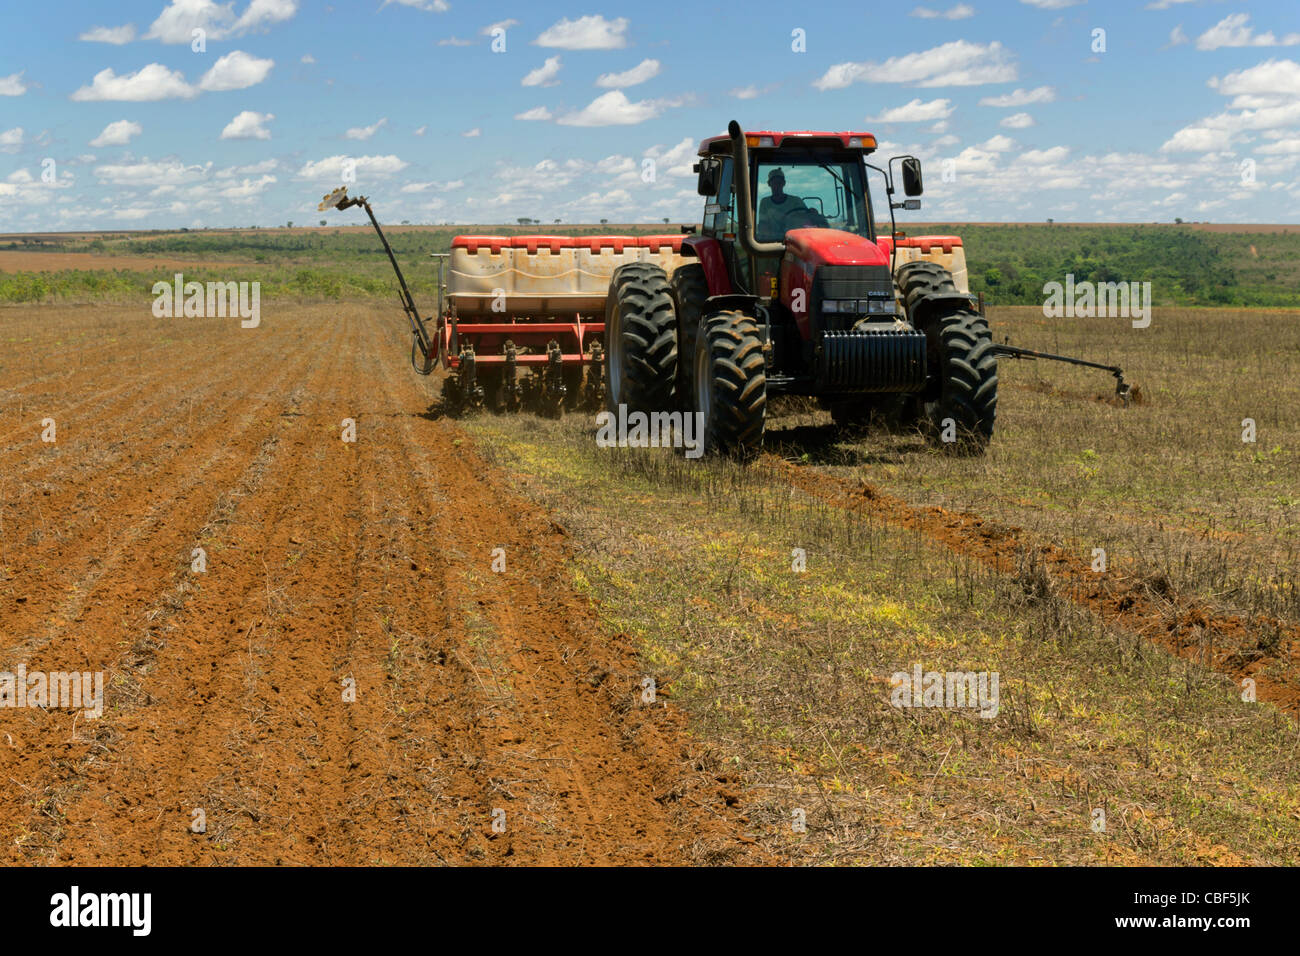 La agricultura mecanizada: siembra de maíz (máquina de siembra, plantación), al sur del estado de Goiás, Brasil central: impacto en el bioma Cerrado. Foto de stock